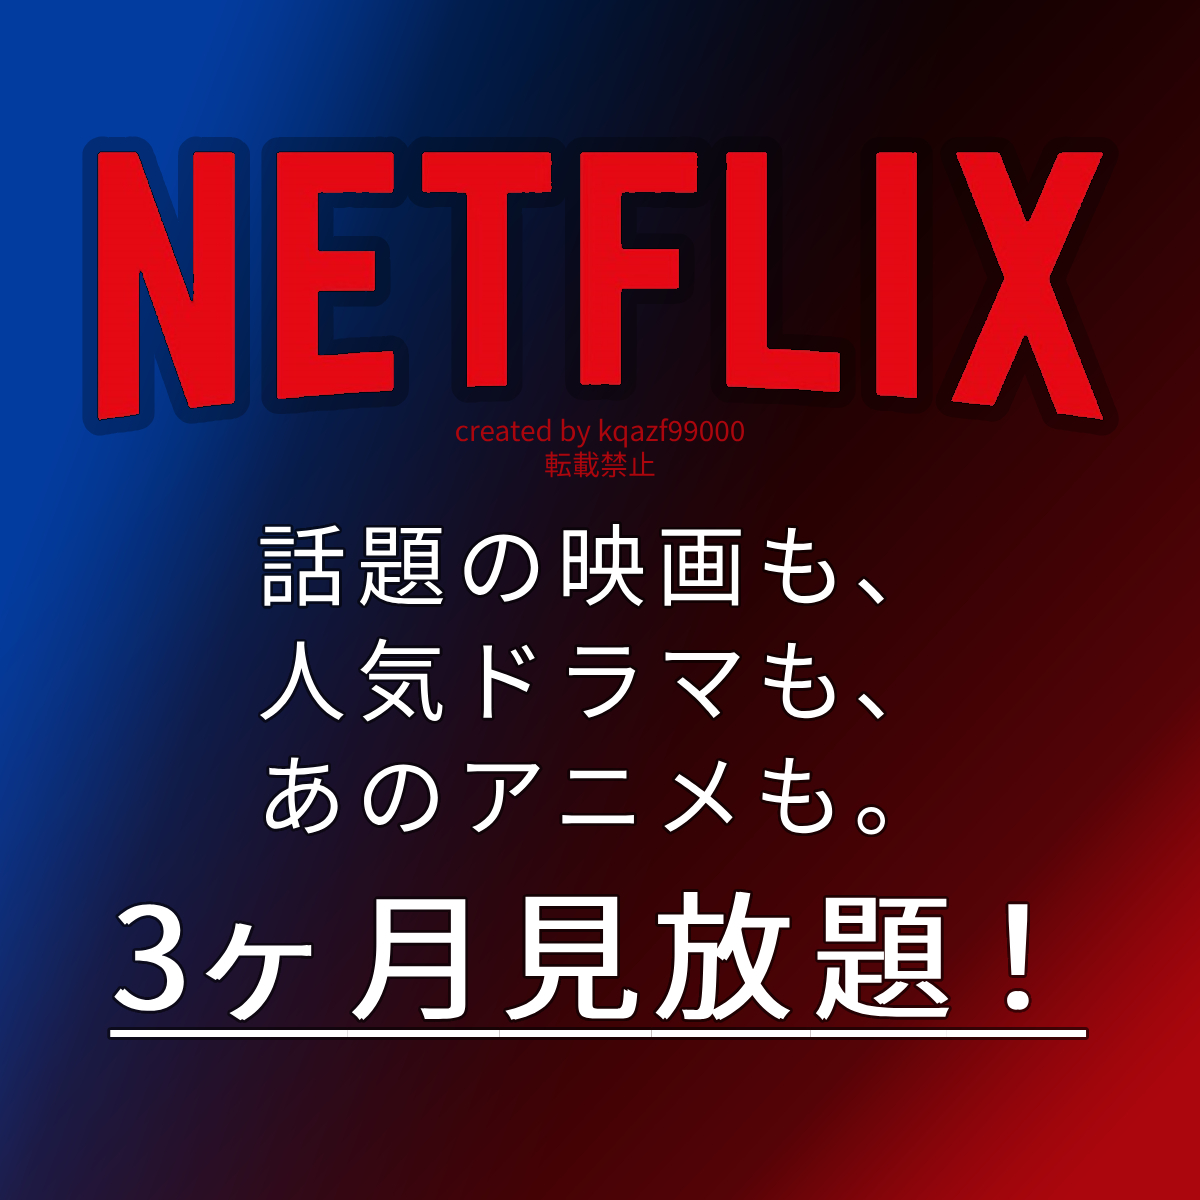 Netflix Premium 3ヶ月 スマートテレビ Fire stick tv Android IOS 4K UHD 対応 アニメ 映画 ドラマ キッズ ファミリー向け 韓流 作品有 の画像1